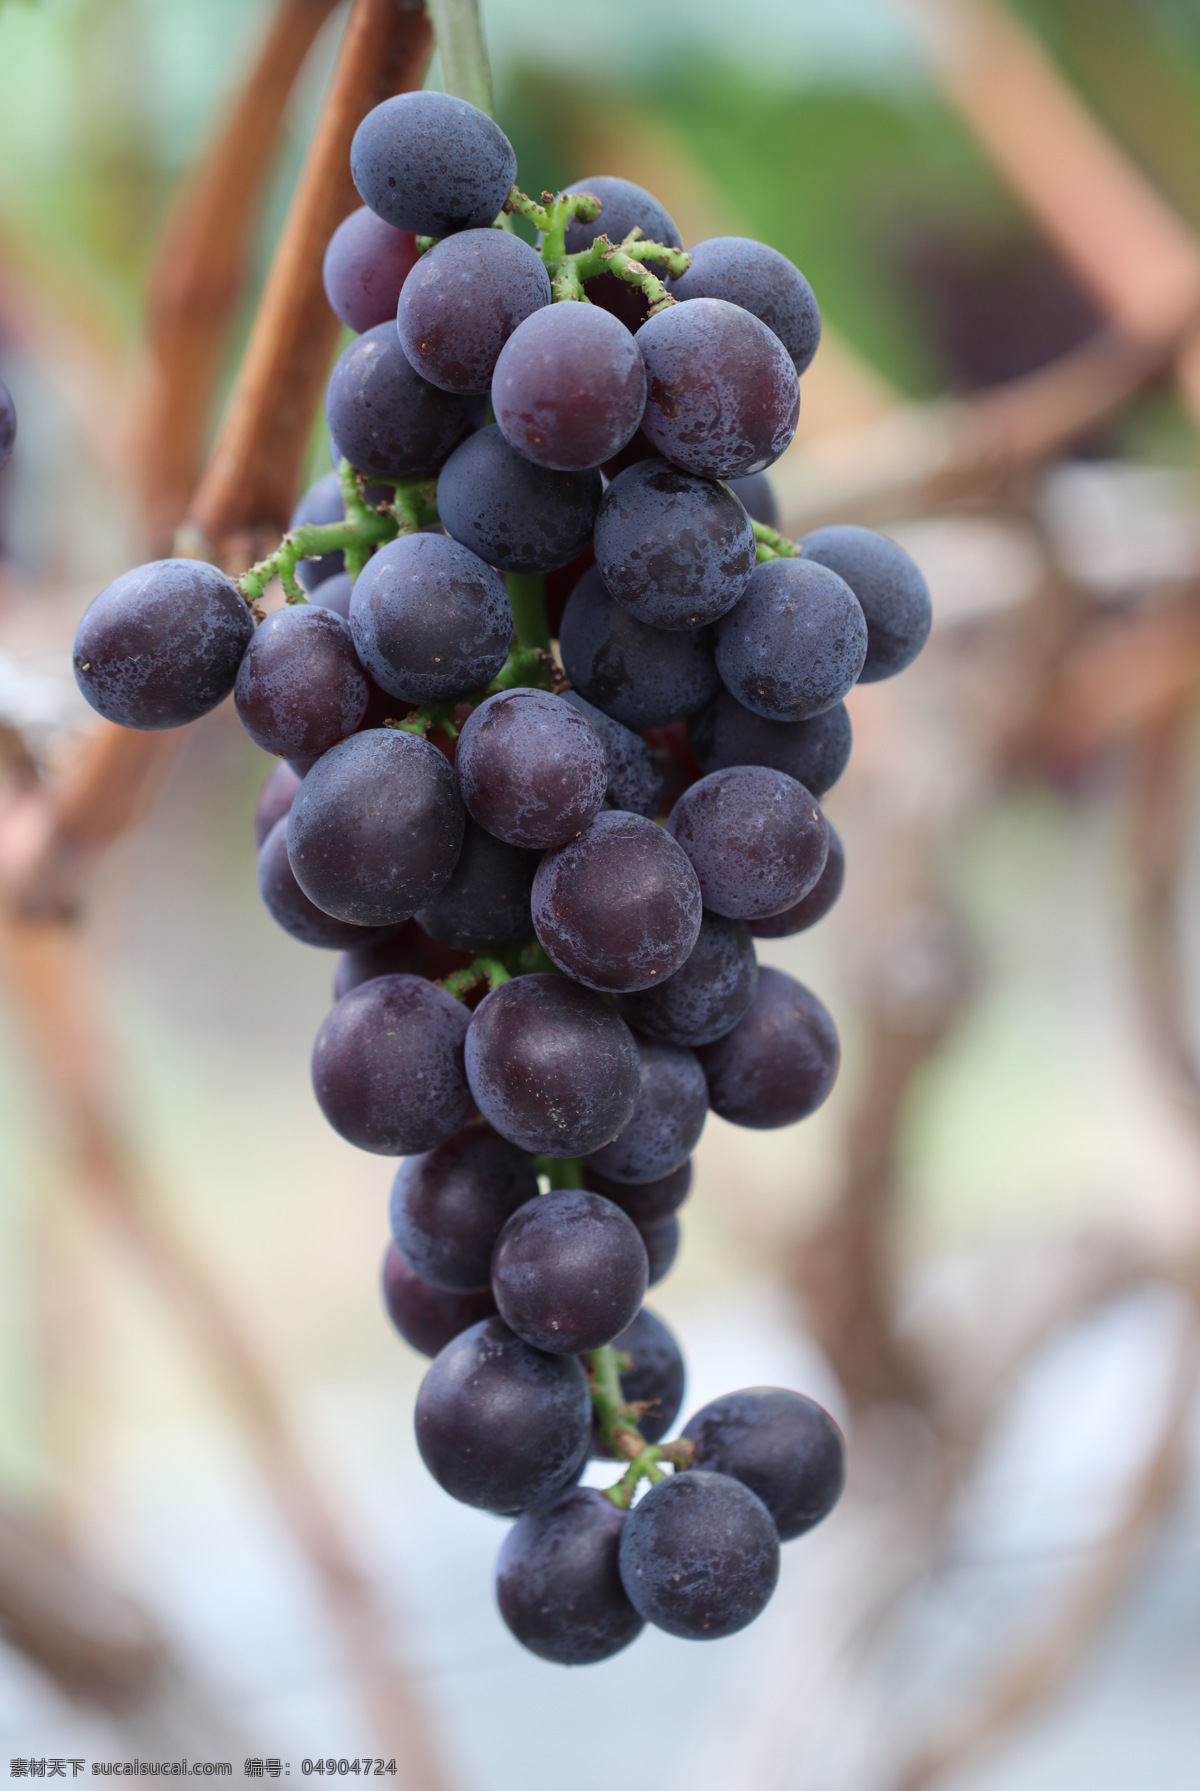 夏黑葡萄图片 葡萄图片 夏黑葡萄照片 葡萄照片 葡萄的图片 葡萄的照片 葡萄照片拍摄 夏黑葡萄拍摄 水果摄影图片 生物世界 水果